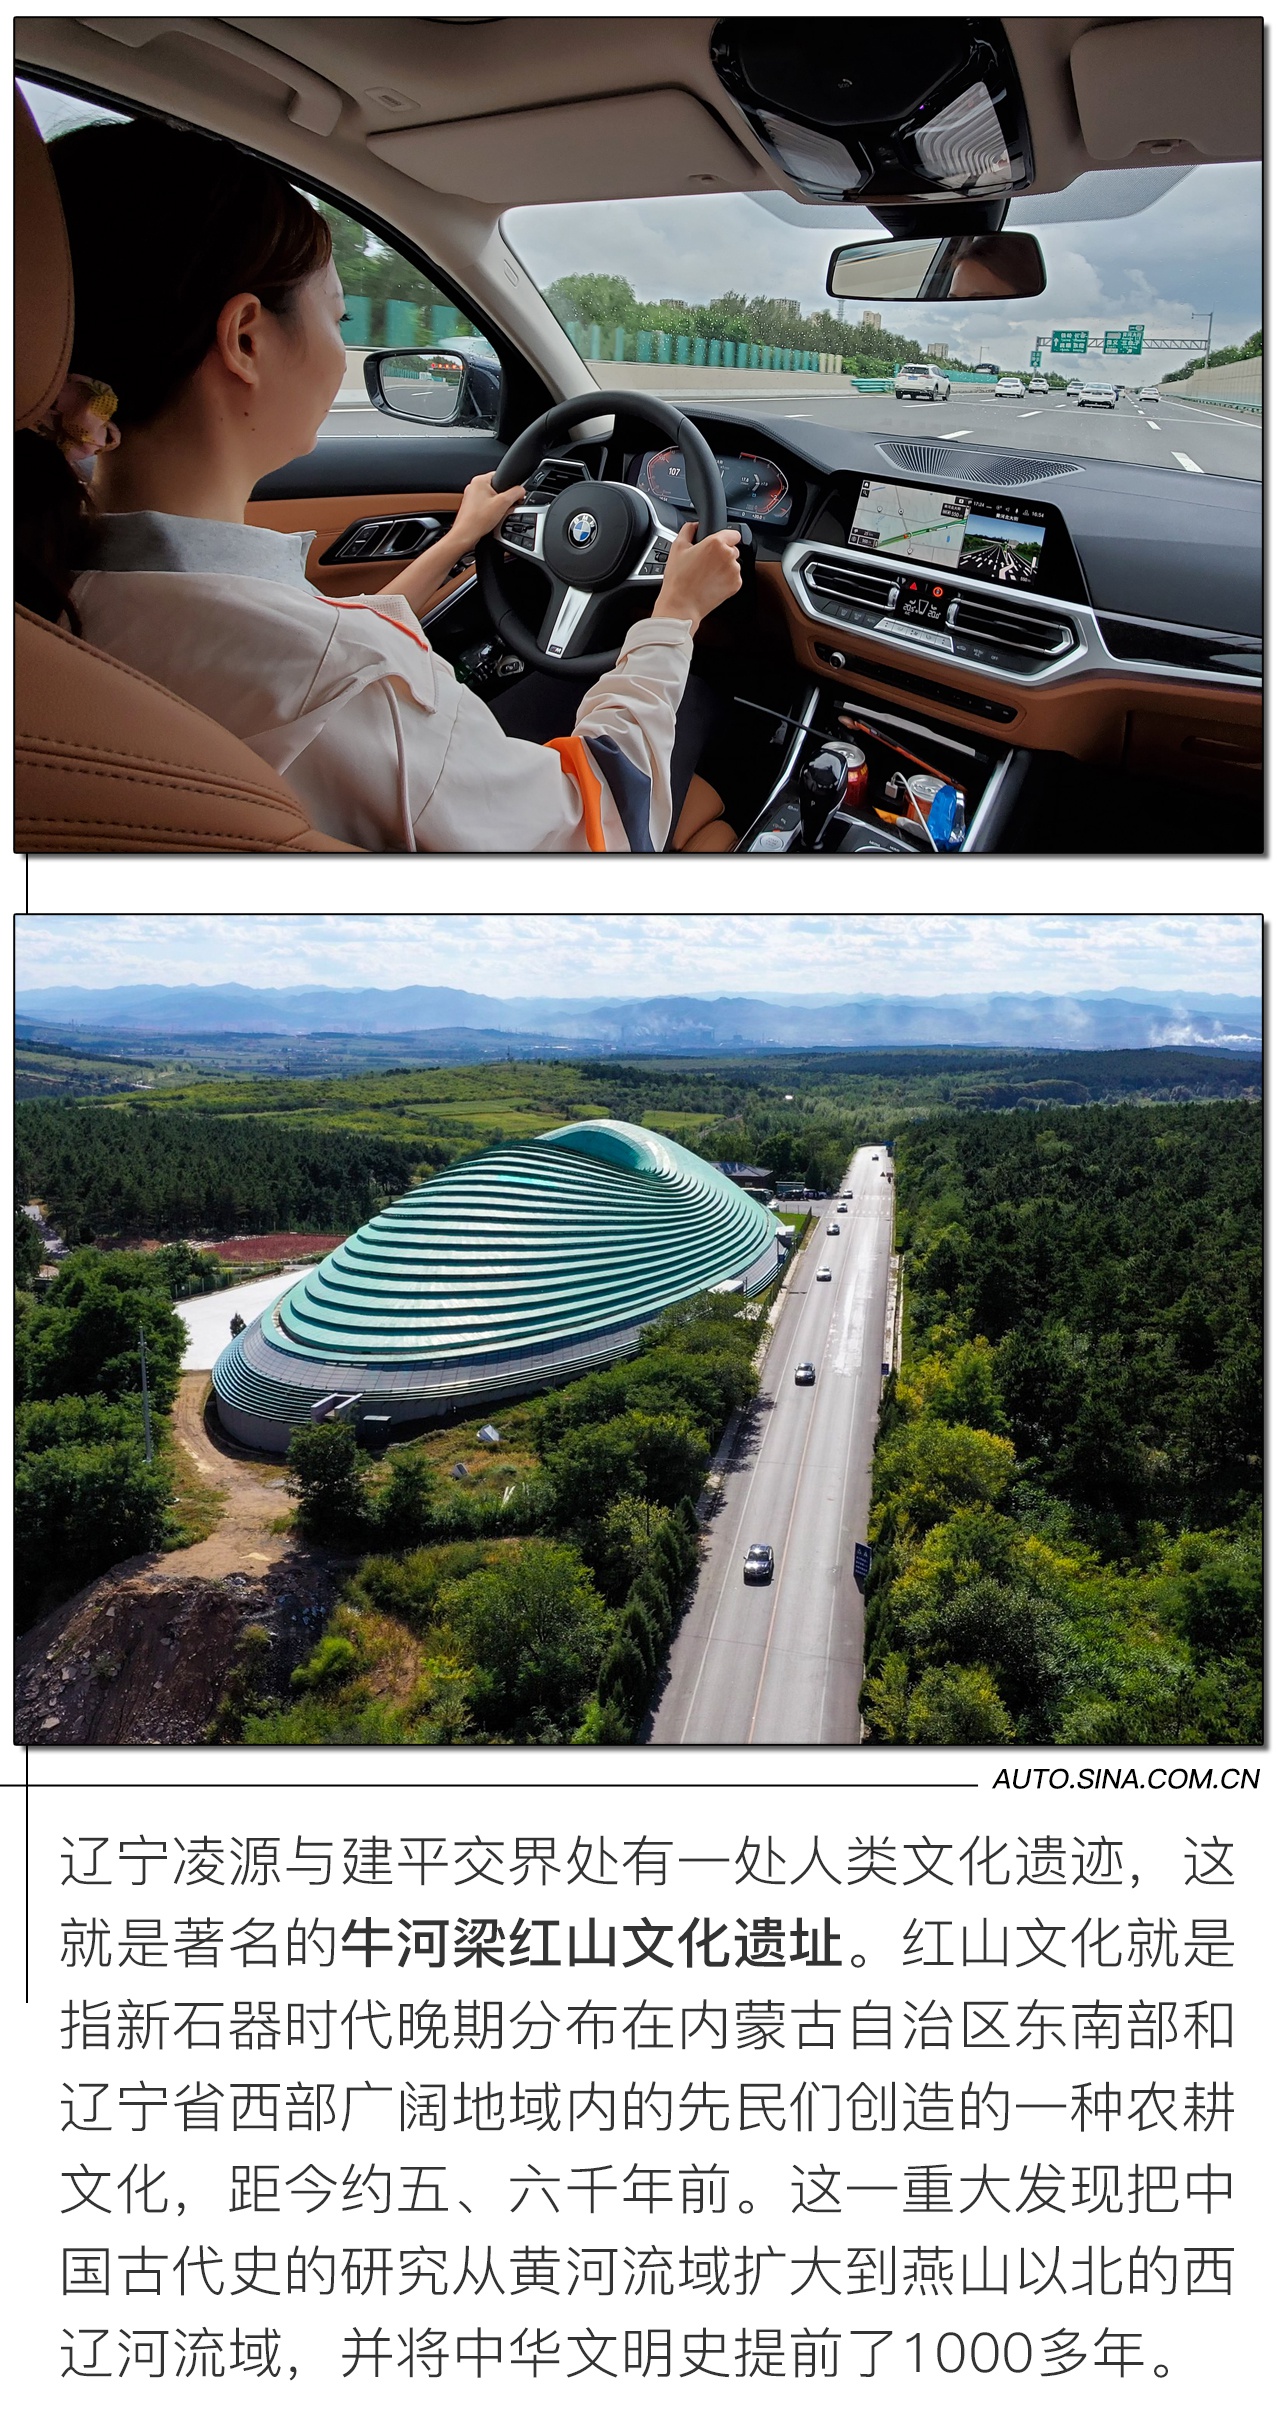 溯源传承振兴 2020 BMW中国文化之旅辽宁非遗探访